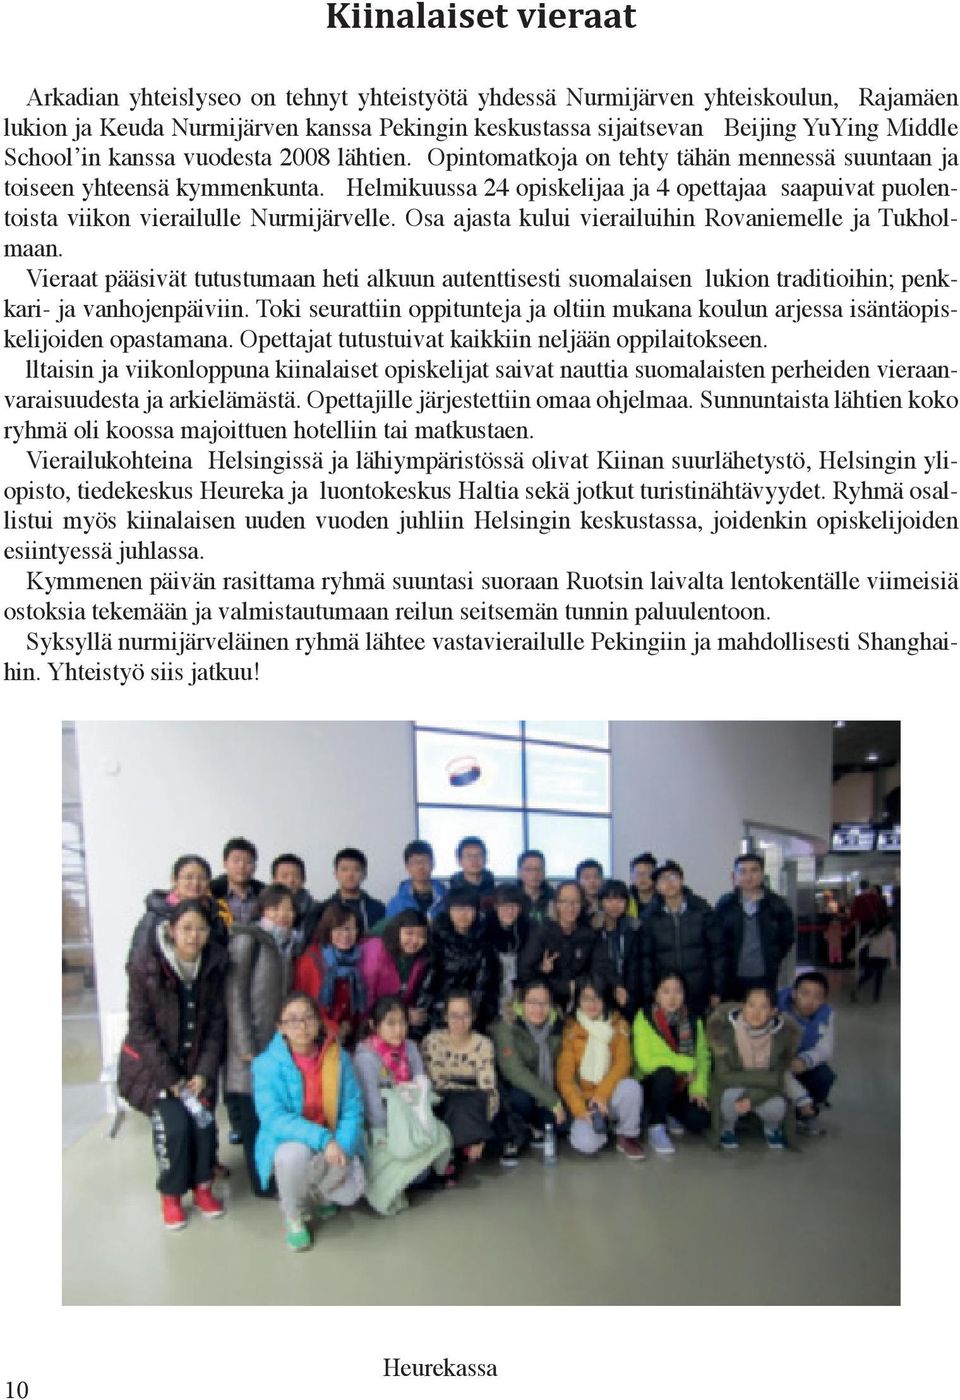 Helmikuussa 24 opiskelijaa ja 4 opettajaa saapuivat puolentoista viikon vierailulle Nurmijärvelle. Osa ajasta kului vierailuihin Rovaniemelle ja Tukholmaan.